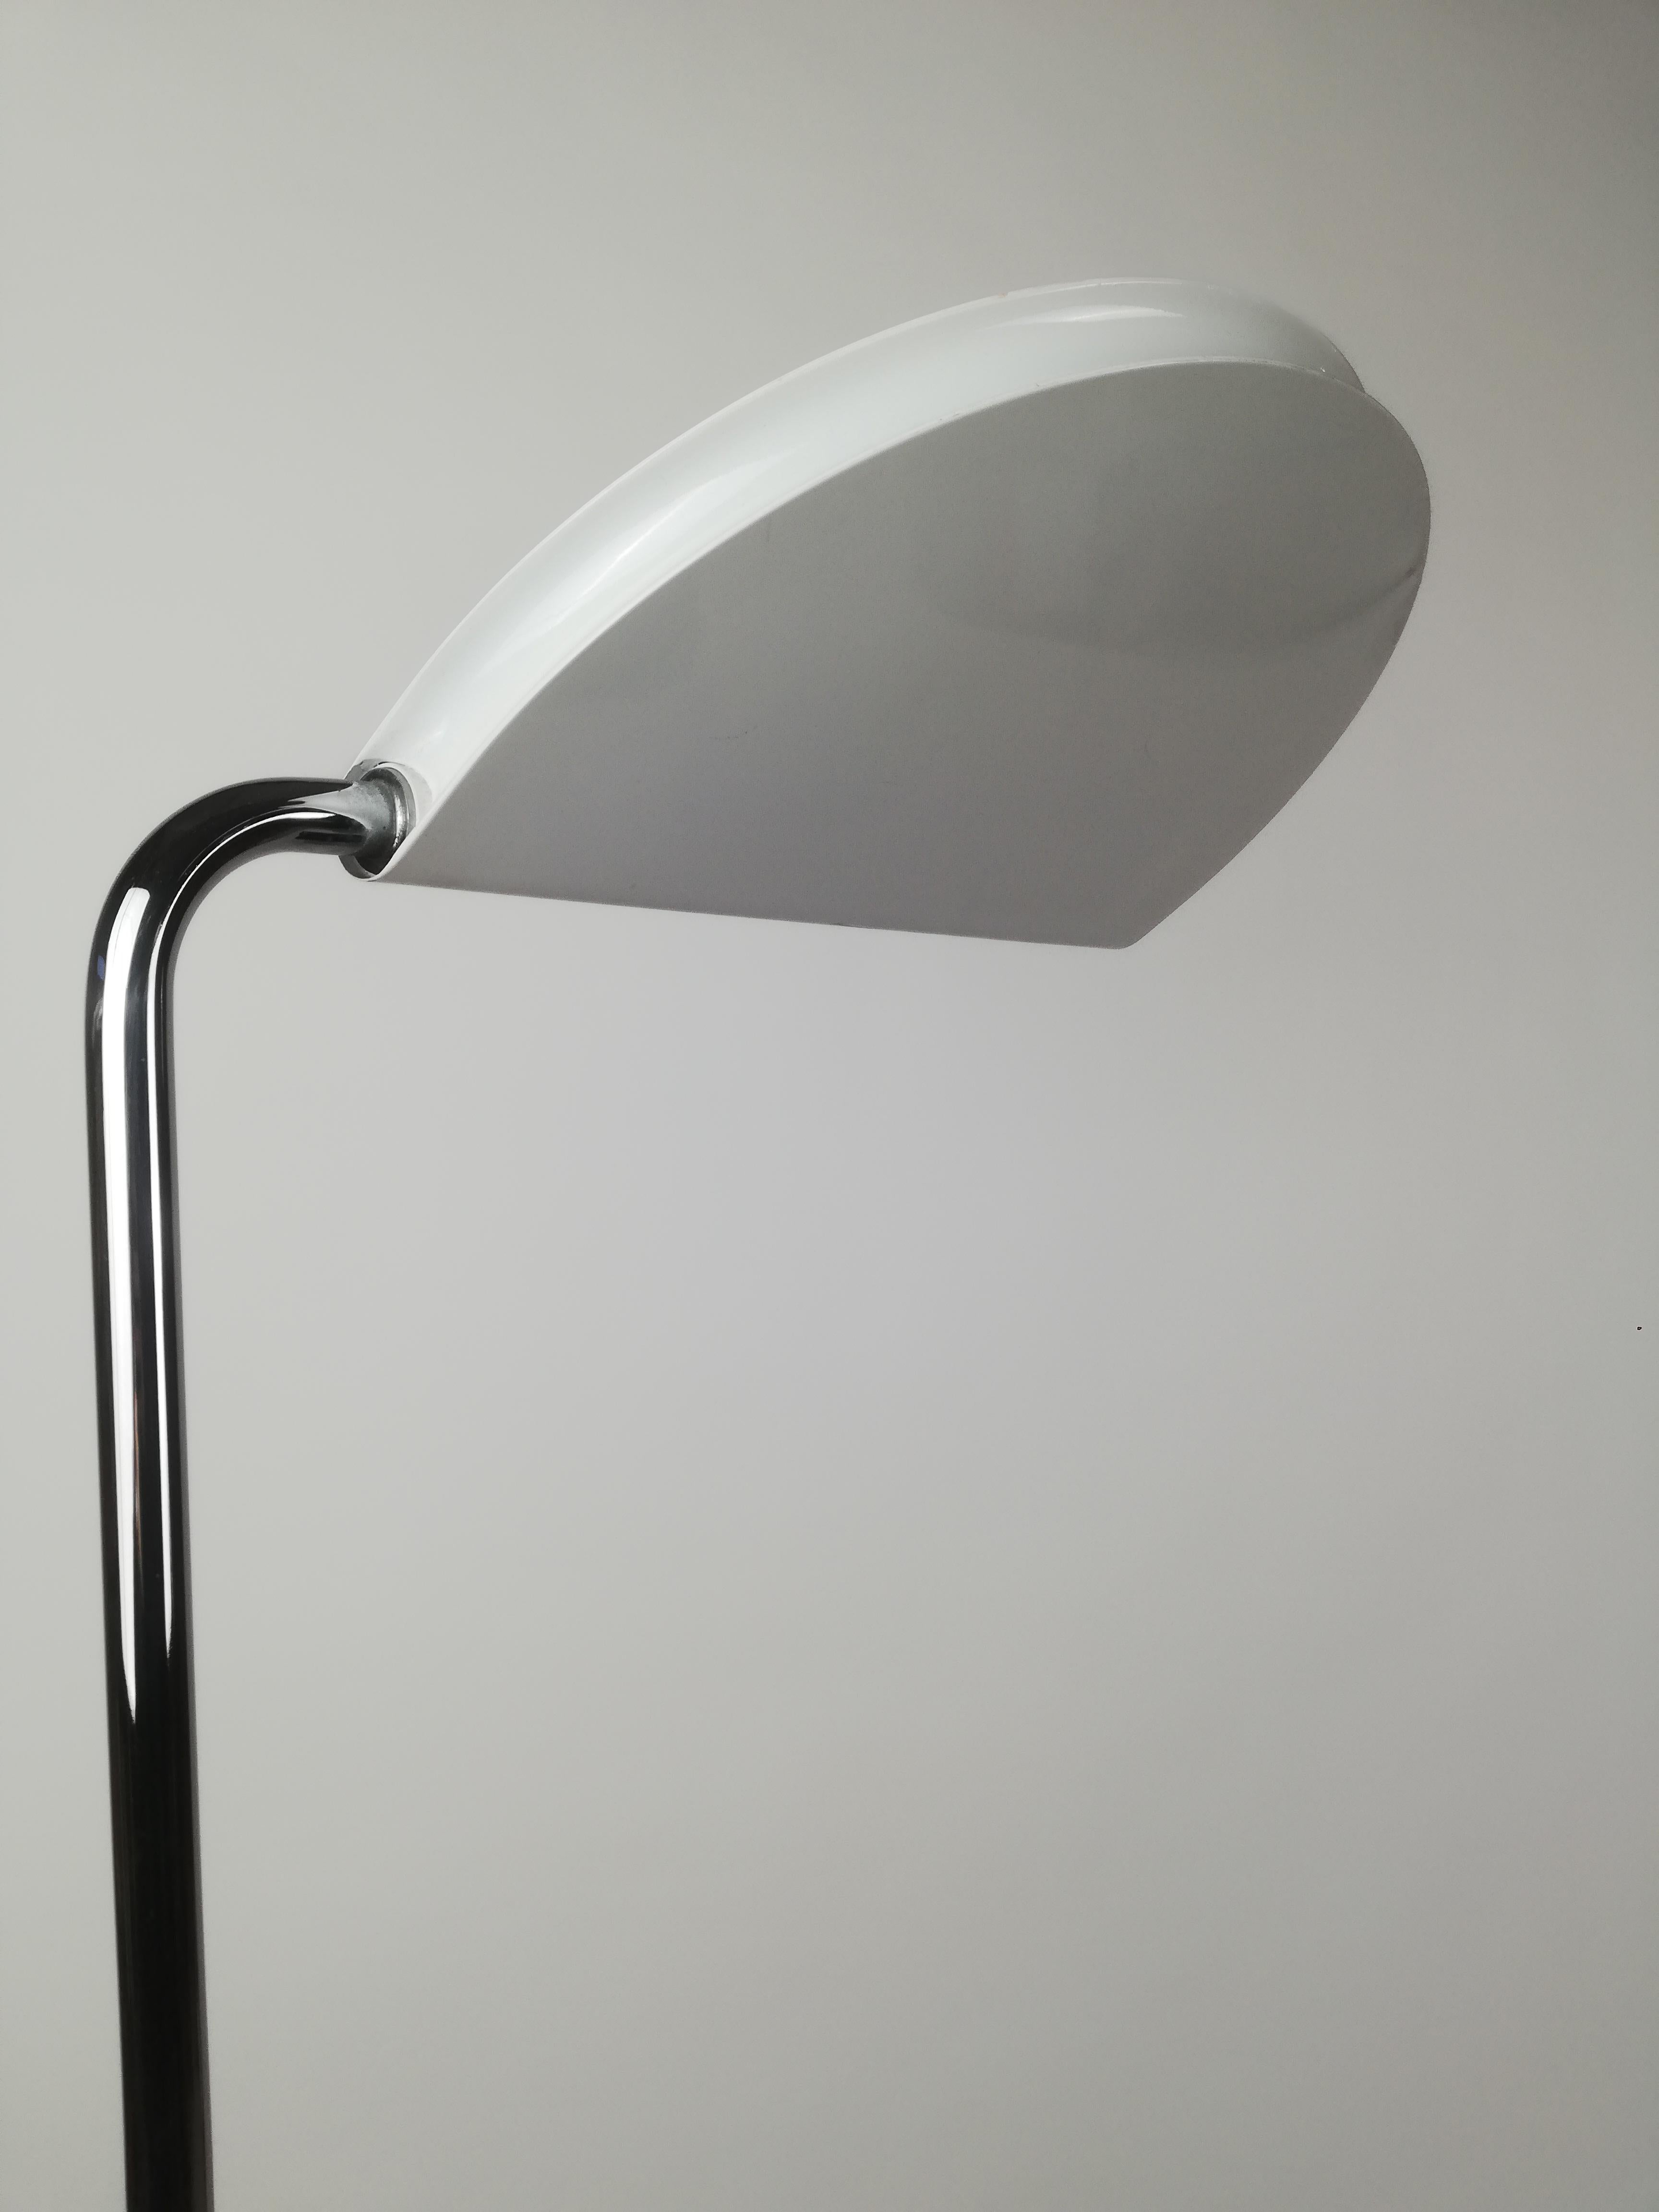 Un lampadaire fin et élégant, conçu en 1970 par Bruno Geccheline pour Skypper.
L'avènement de la lampe halogène a révolutionné l'éclairage non seulement sur le plan technique, mais aussi sur le plan stylistique.
La puissance de la lampe halogène,